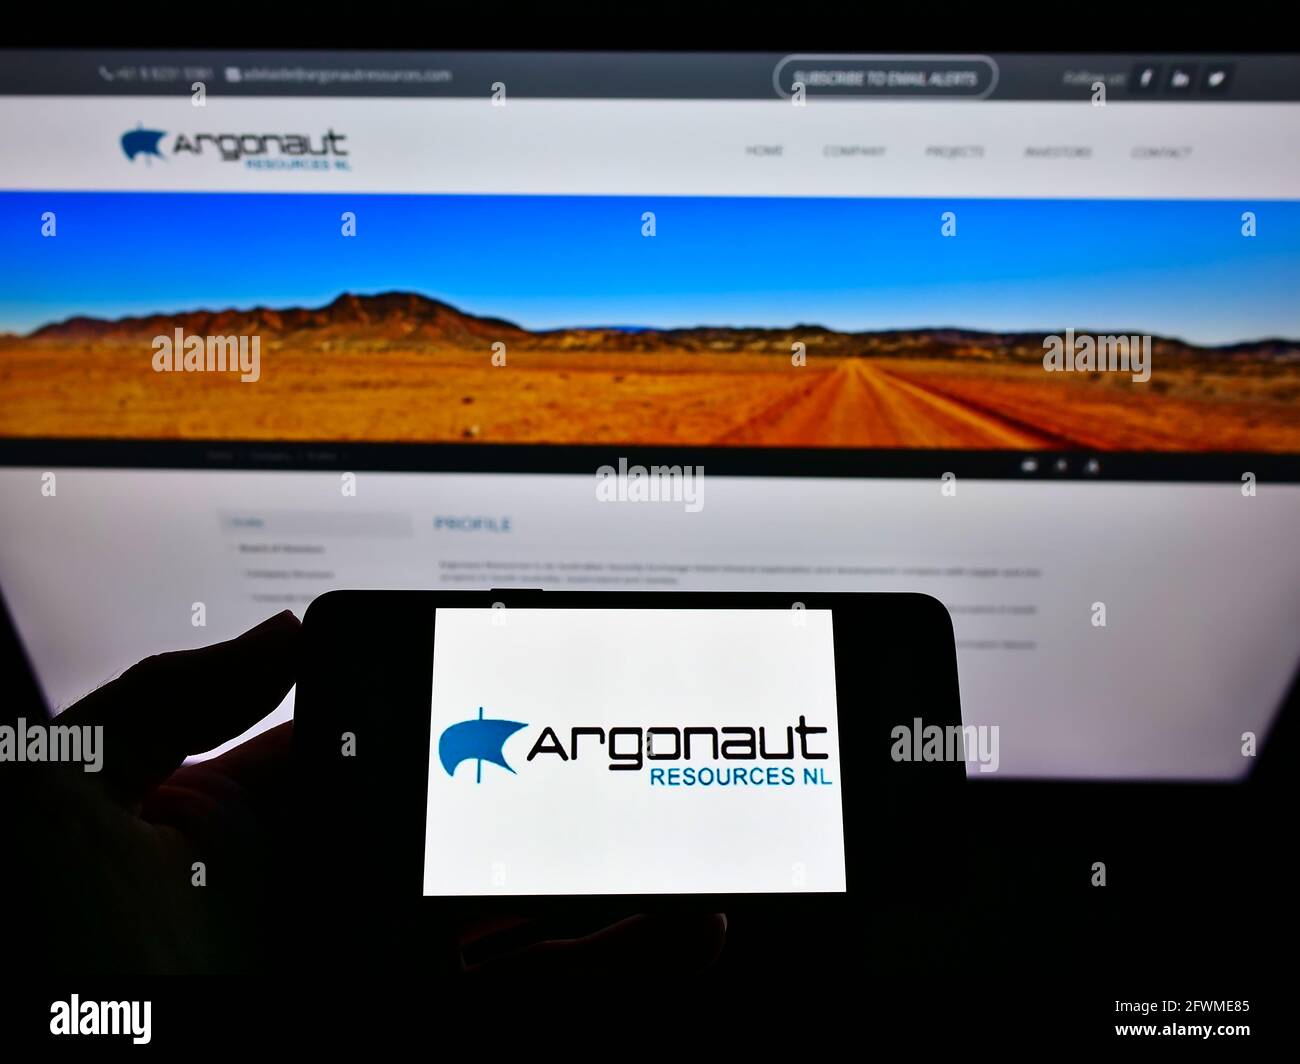 Persona che tiene il telefono mobile con il logo della società mineraria australiana Argonaut risorse NL sullo schermo davanti alla pagina web. Mettere a fuoco il display del telefono. Foto Stock